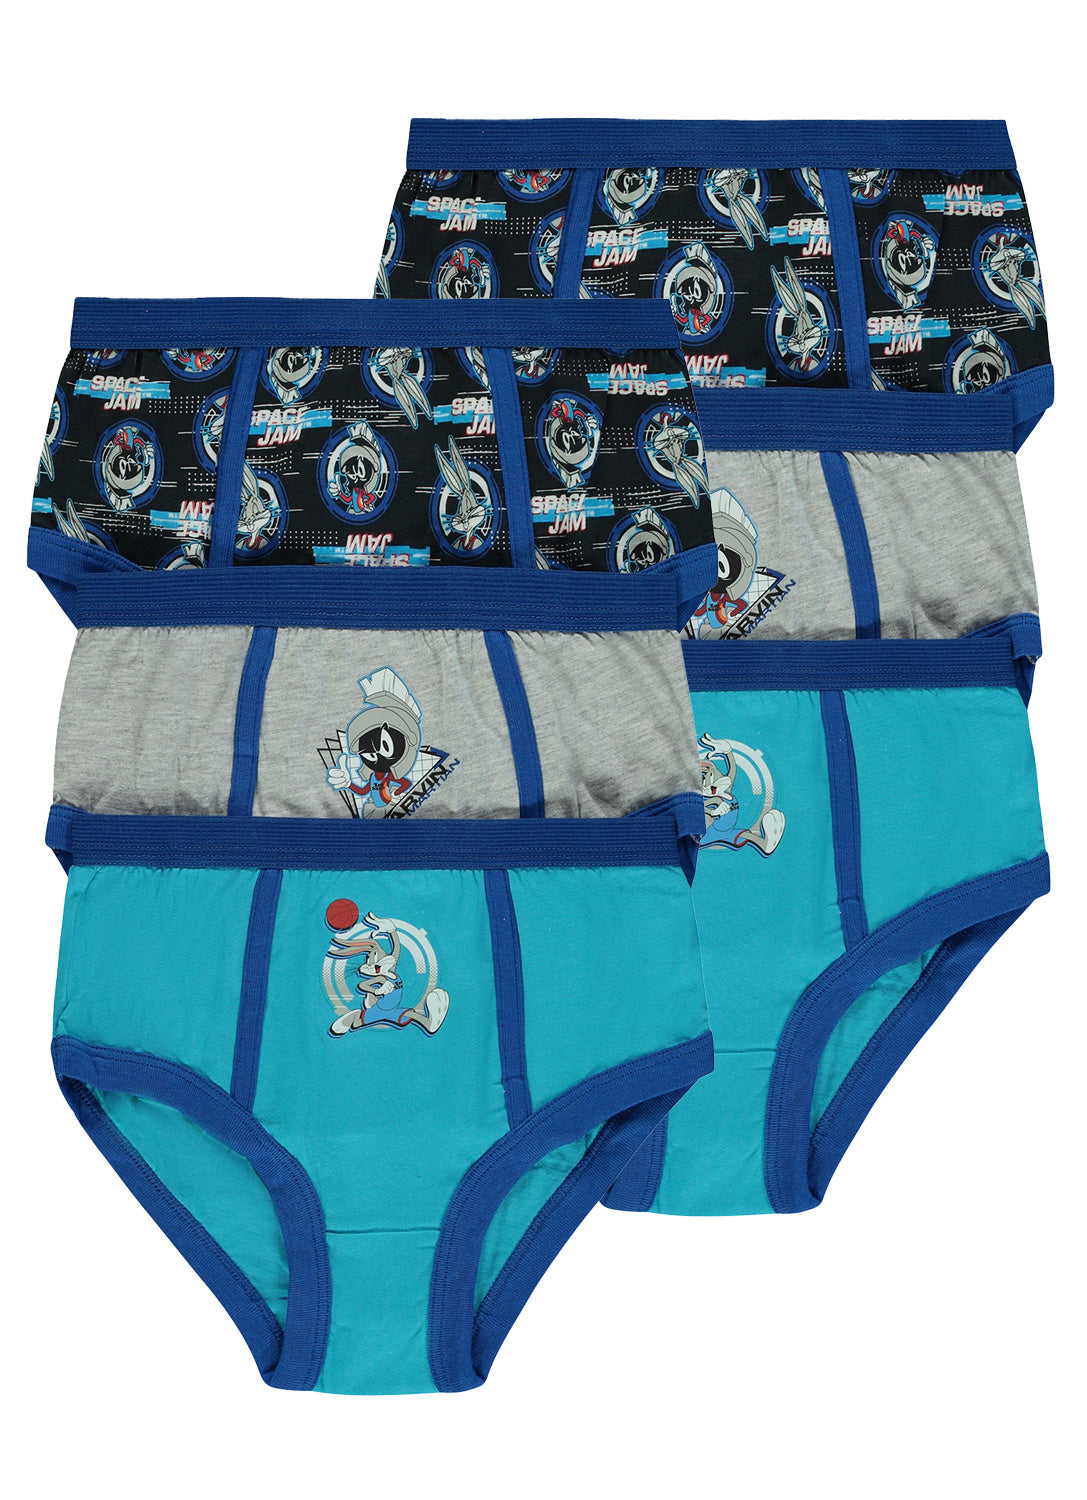 Boys Space Jam 2 Cotton Underwear - 6 Pack